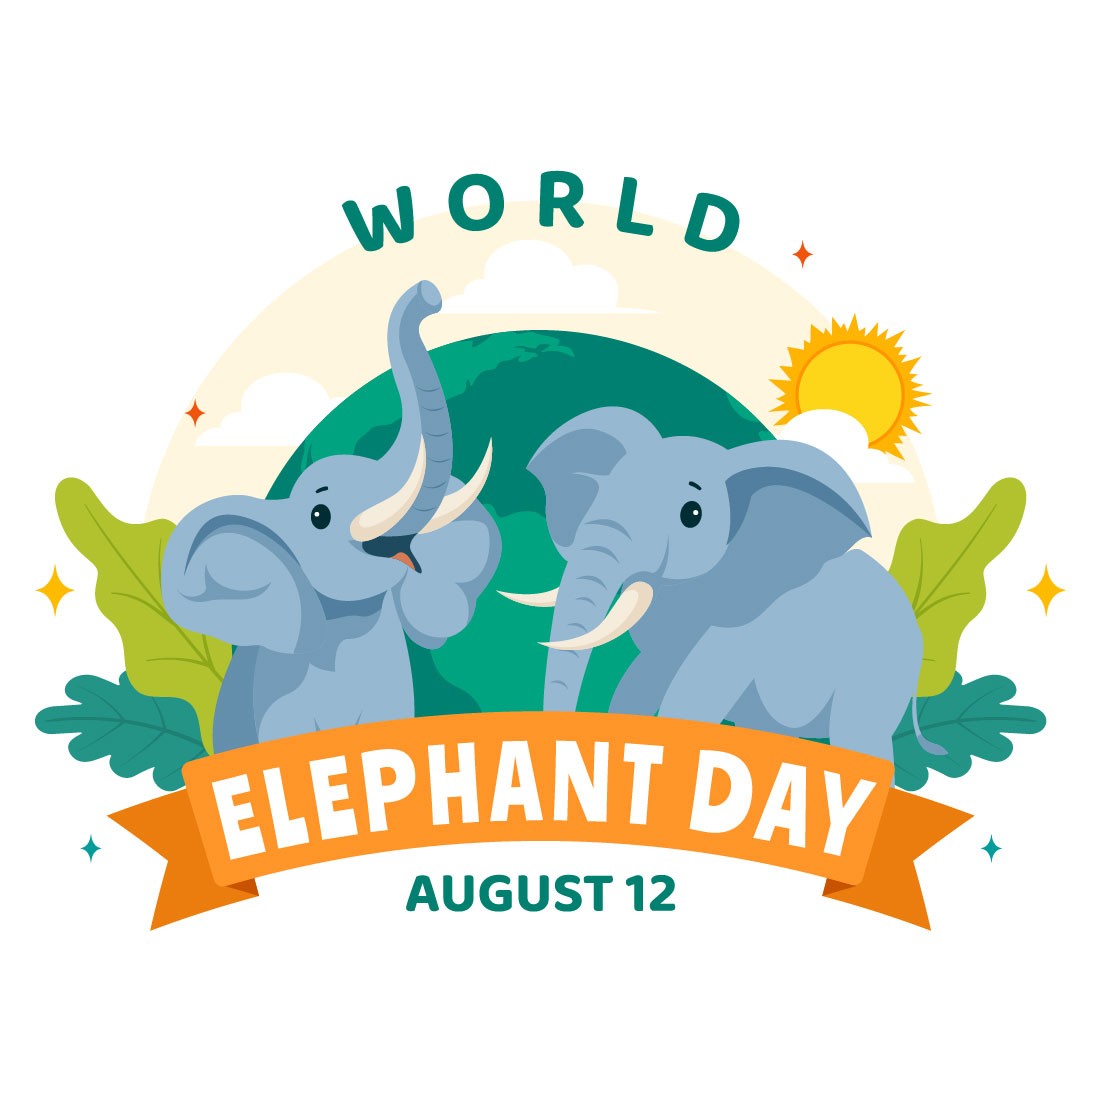 11 World Elephant Day Illustration cover image.